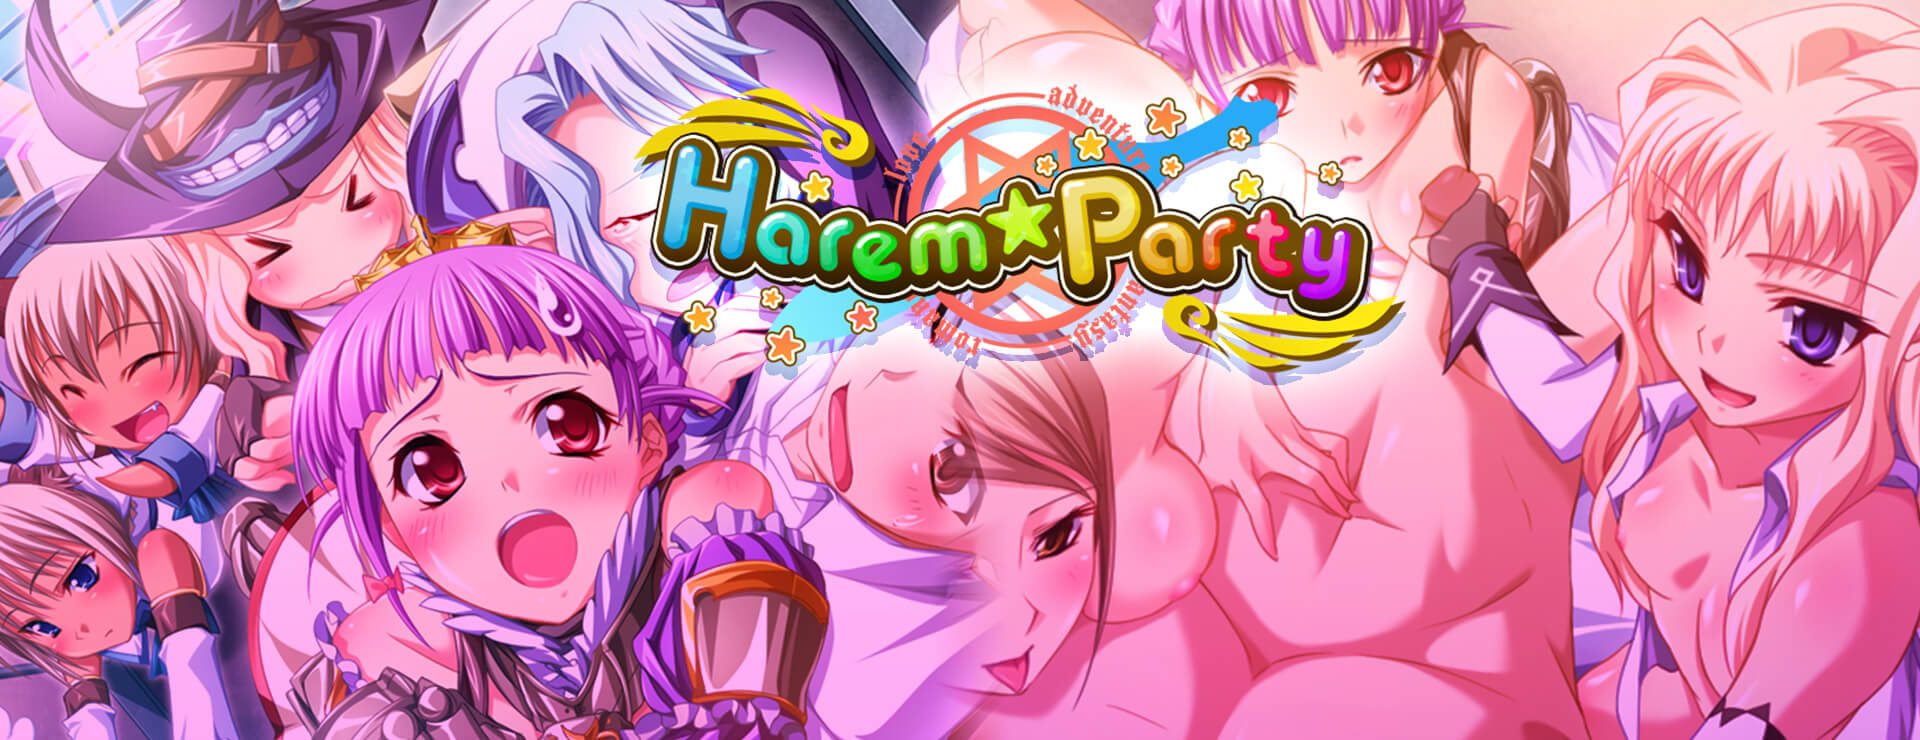 Harem Party - Roman Visuel Jeu